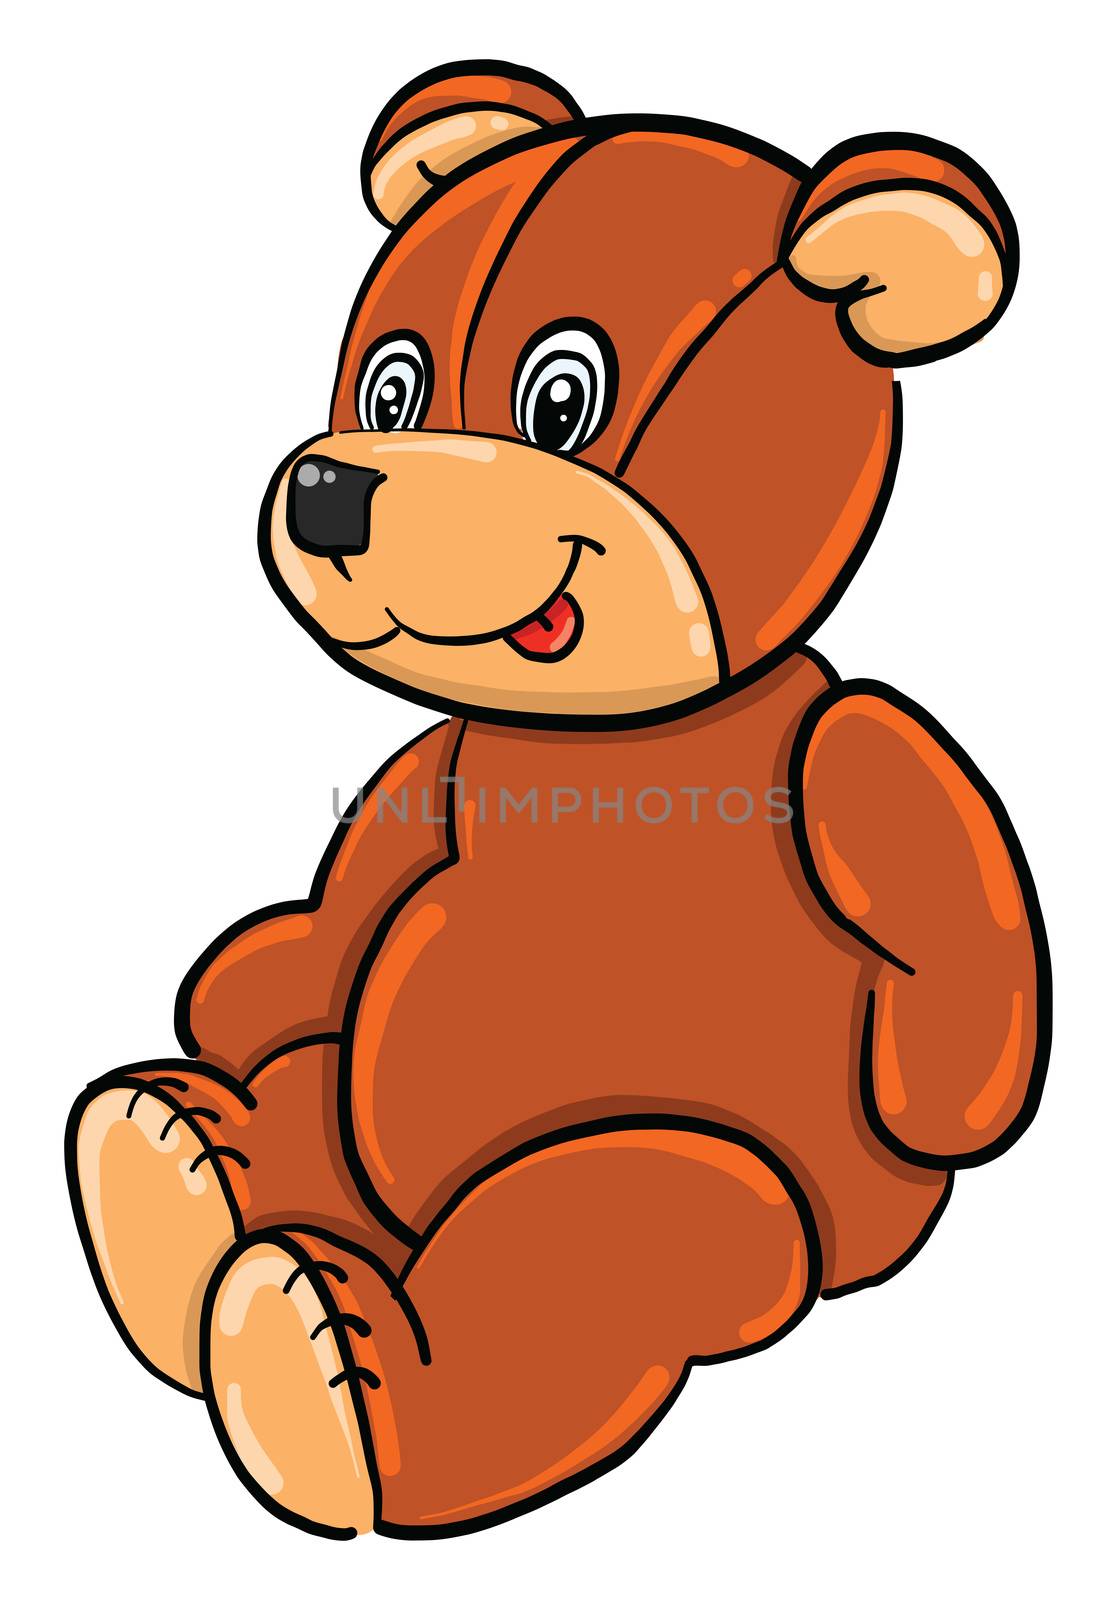 Teddy bear , illustration, vector on white background by Morphart